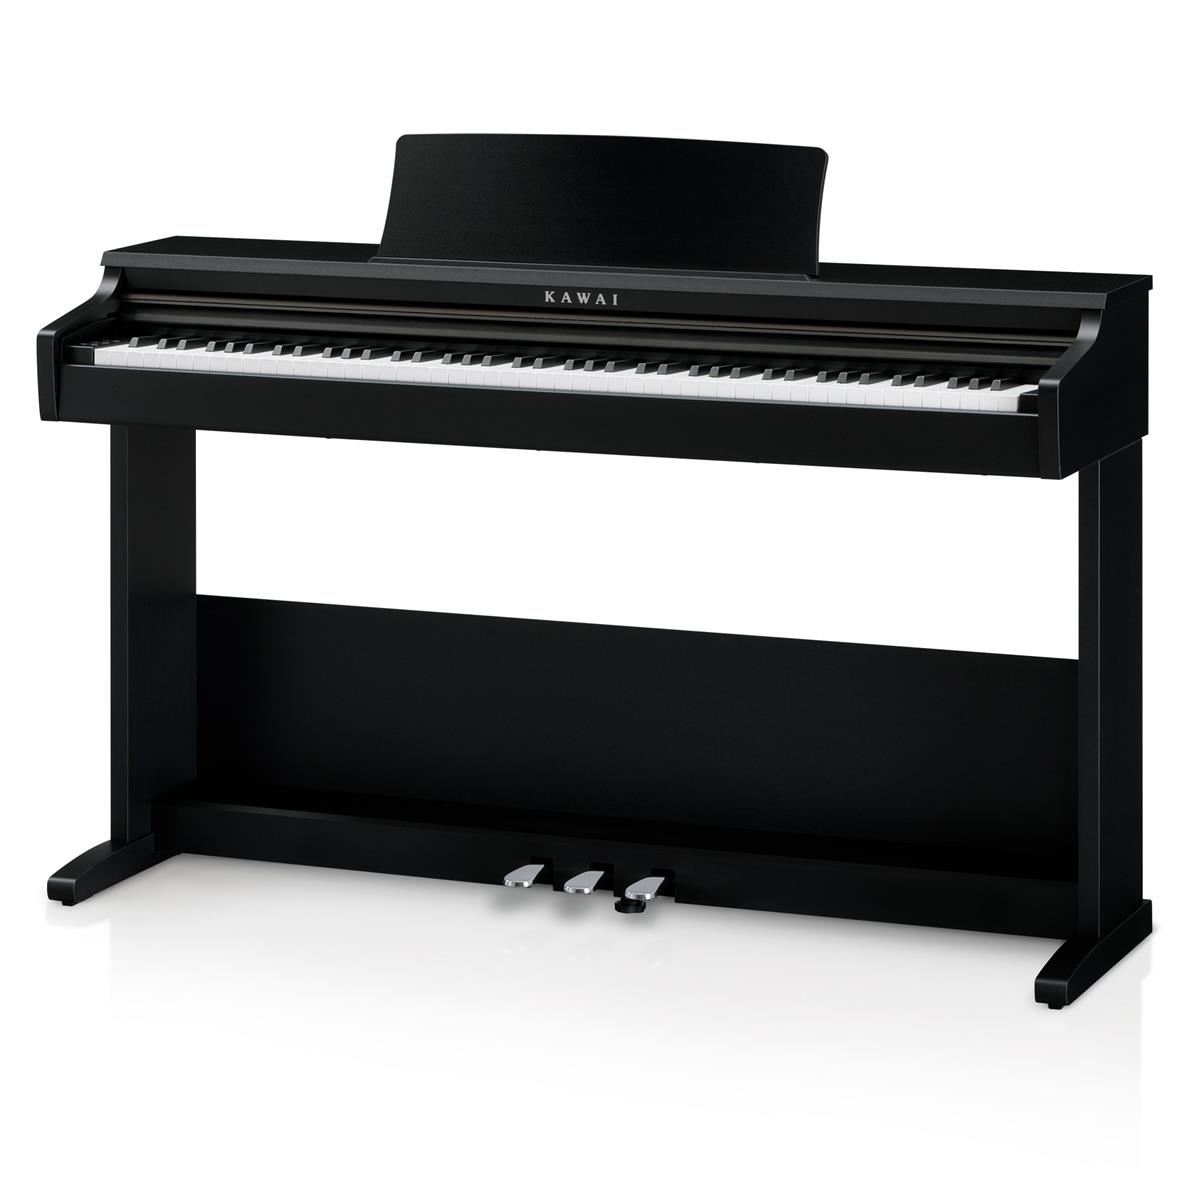 Kawai KDP75 88-Key Digital Piano with Bench $749 + free s/h